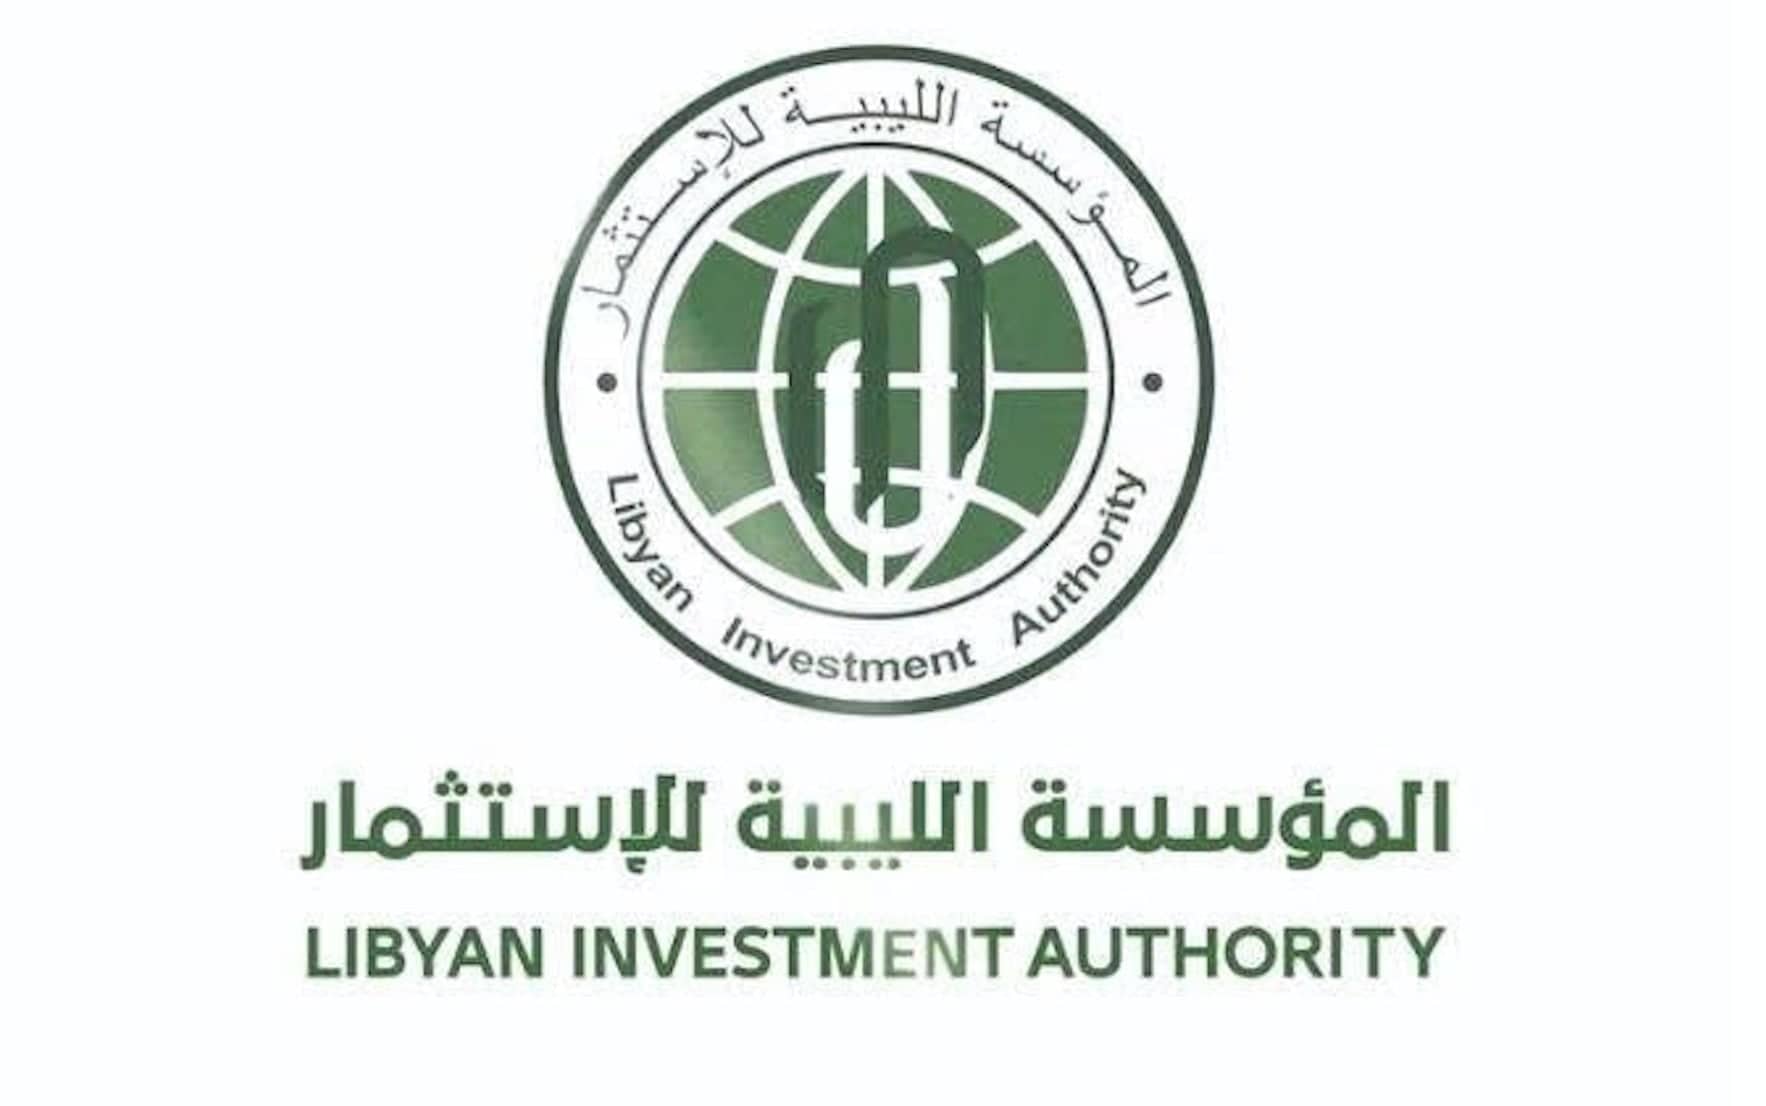 تواصل النزاع مع مؤسسة سويسرية  المؤسسة الليبية للاستثمار (أحد أكبر الصناديق الاستثمارية السيادية في العالم تحرم من التصرف في أصولها)